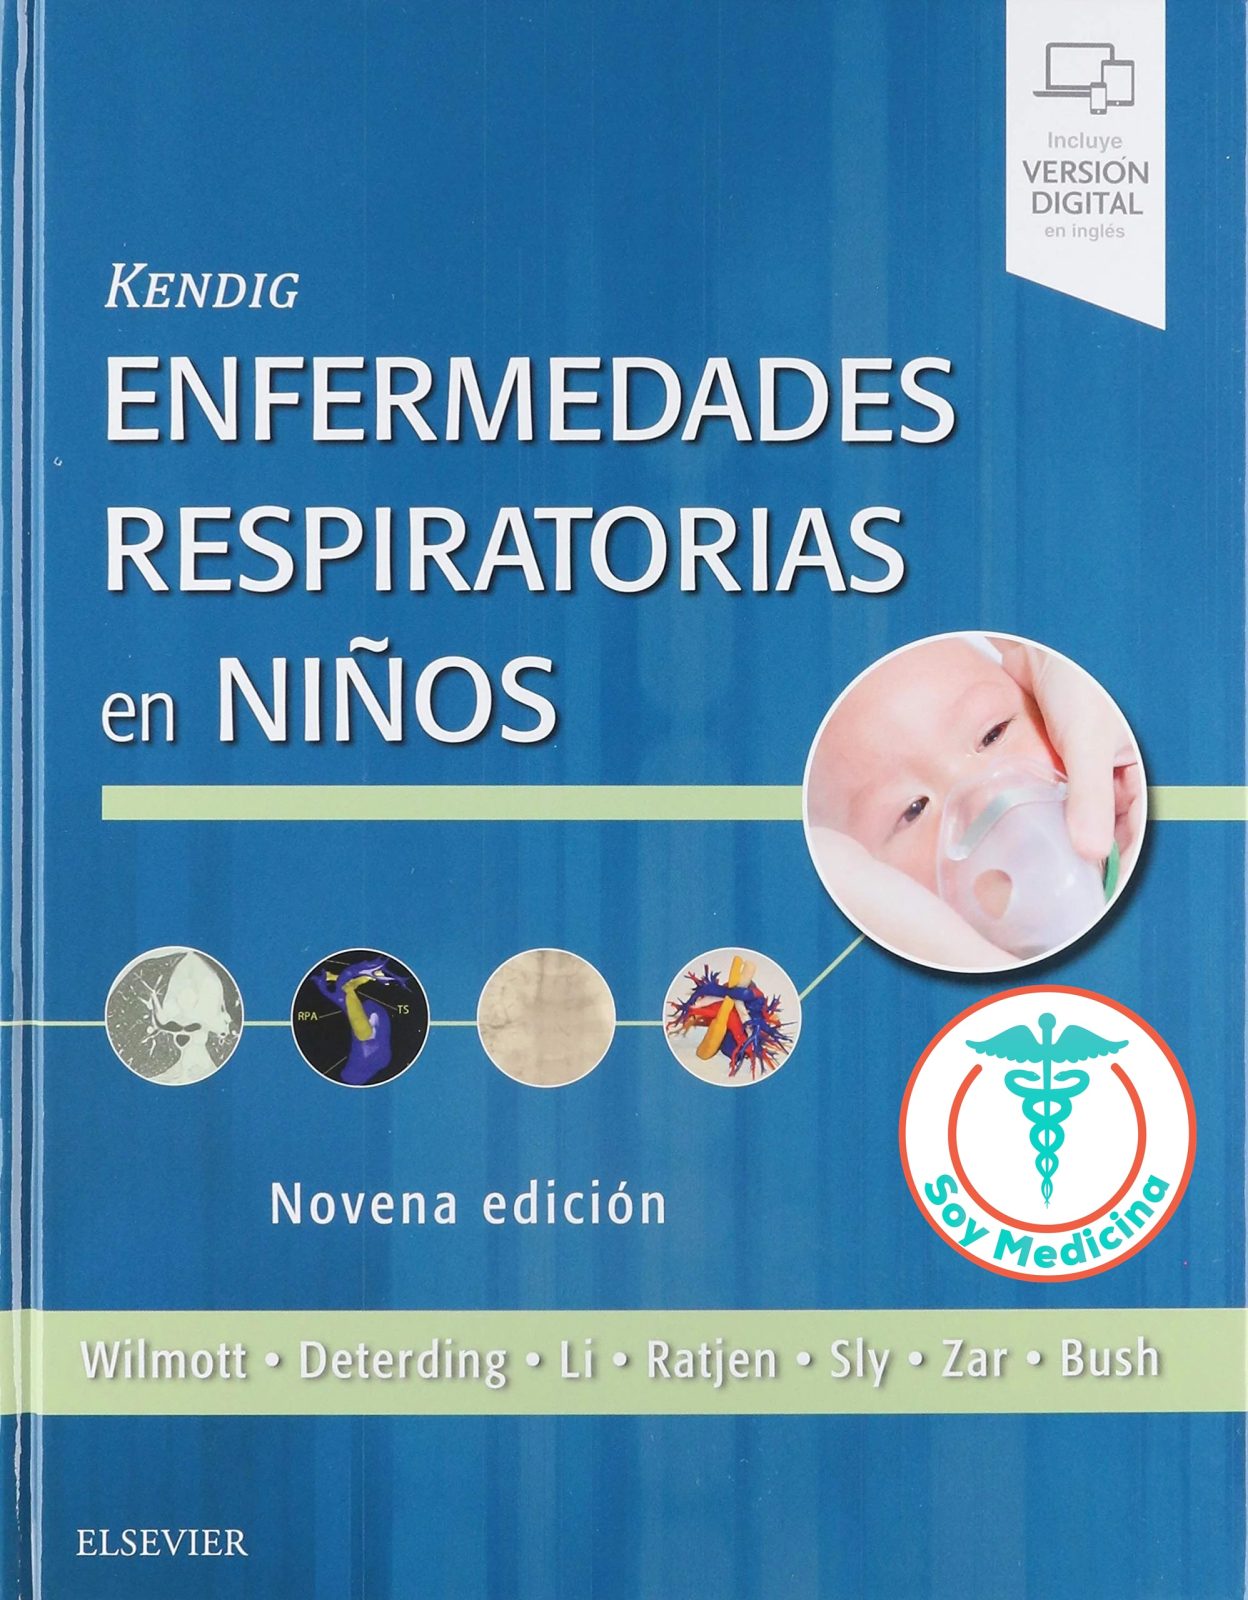 Kendig Enfermedades Respiratorias en Niños - 9 Edicion